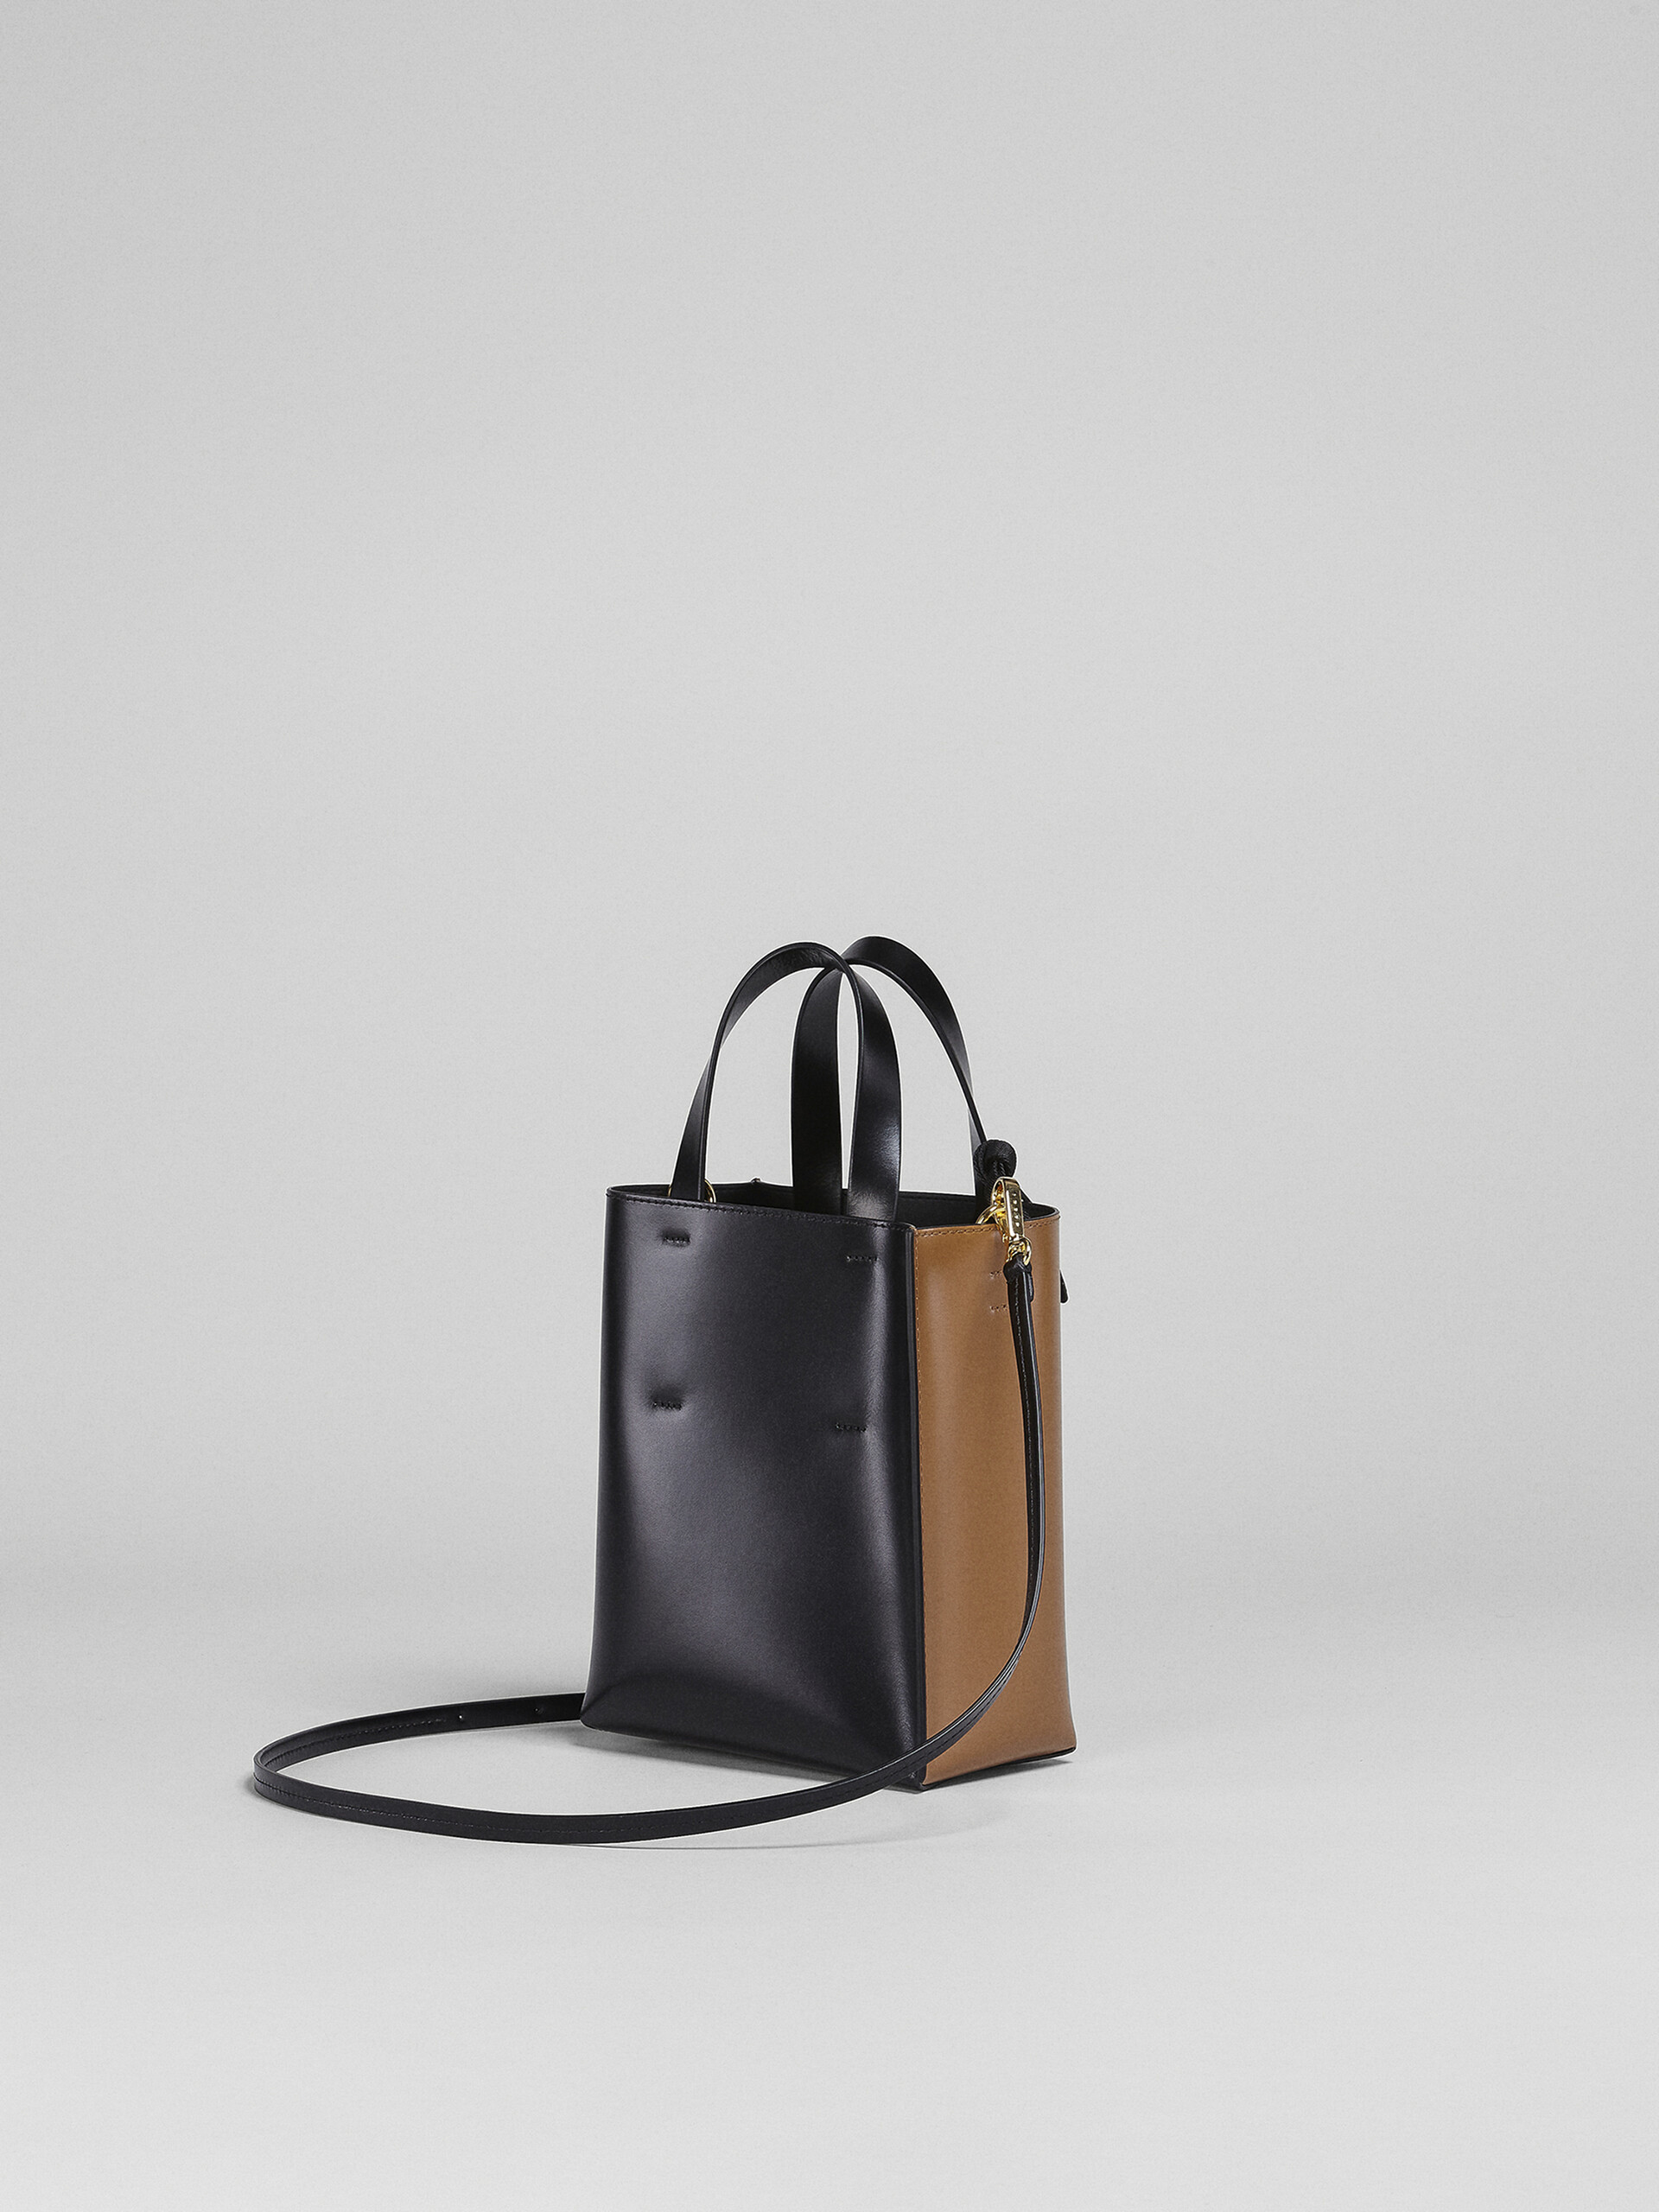 Museo Bag Mini in pelle nera e marrone - Borse shopping - Image 3